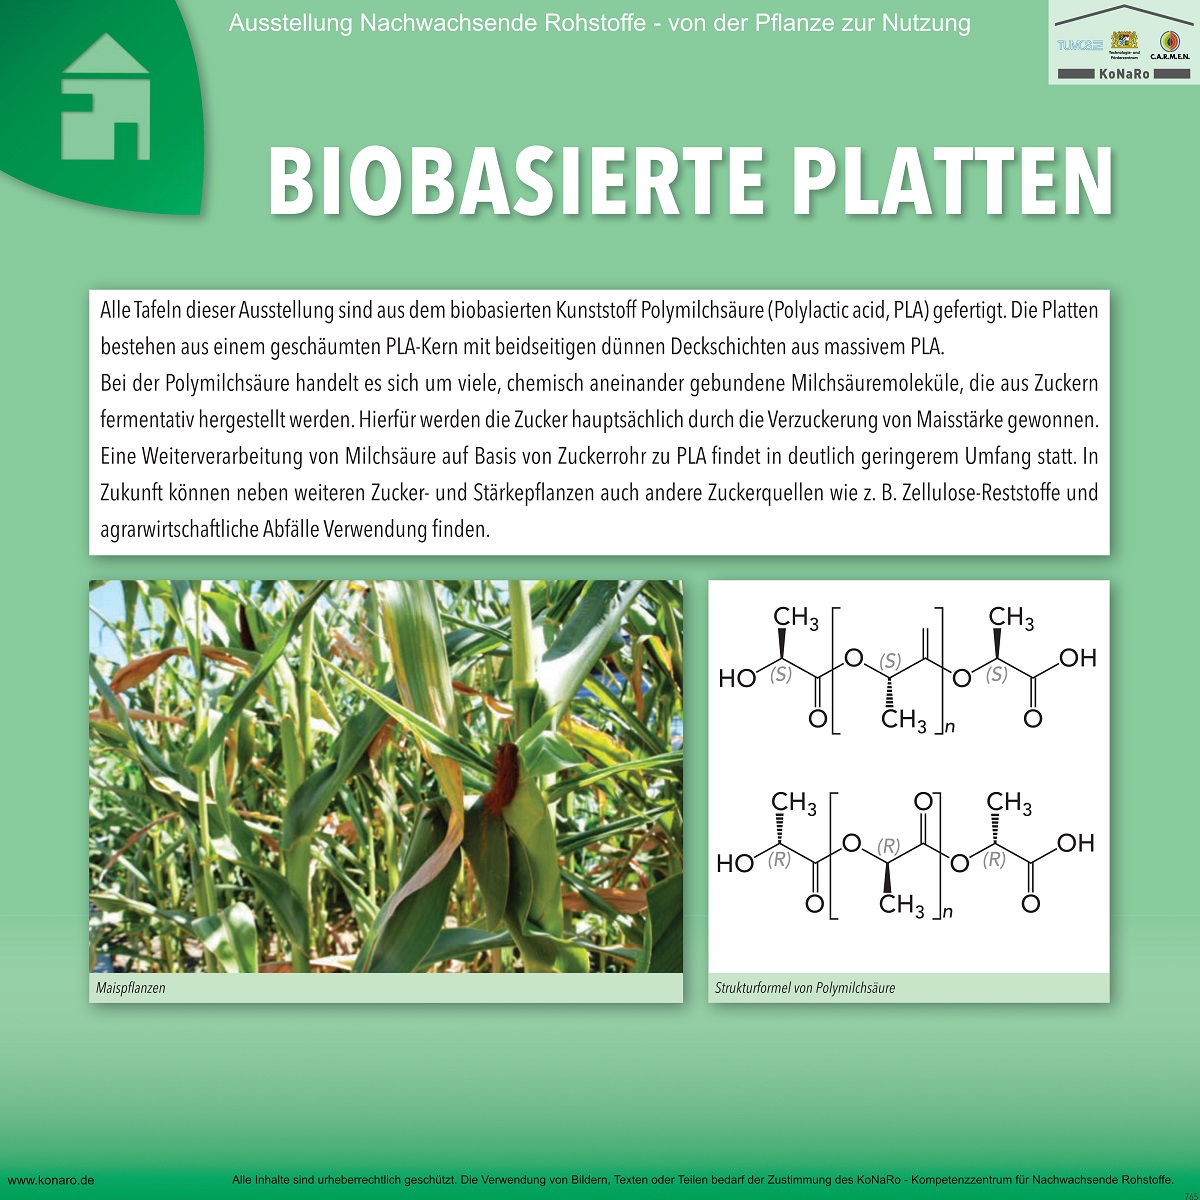 Abteilung 7: Biobasierte Platten